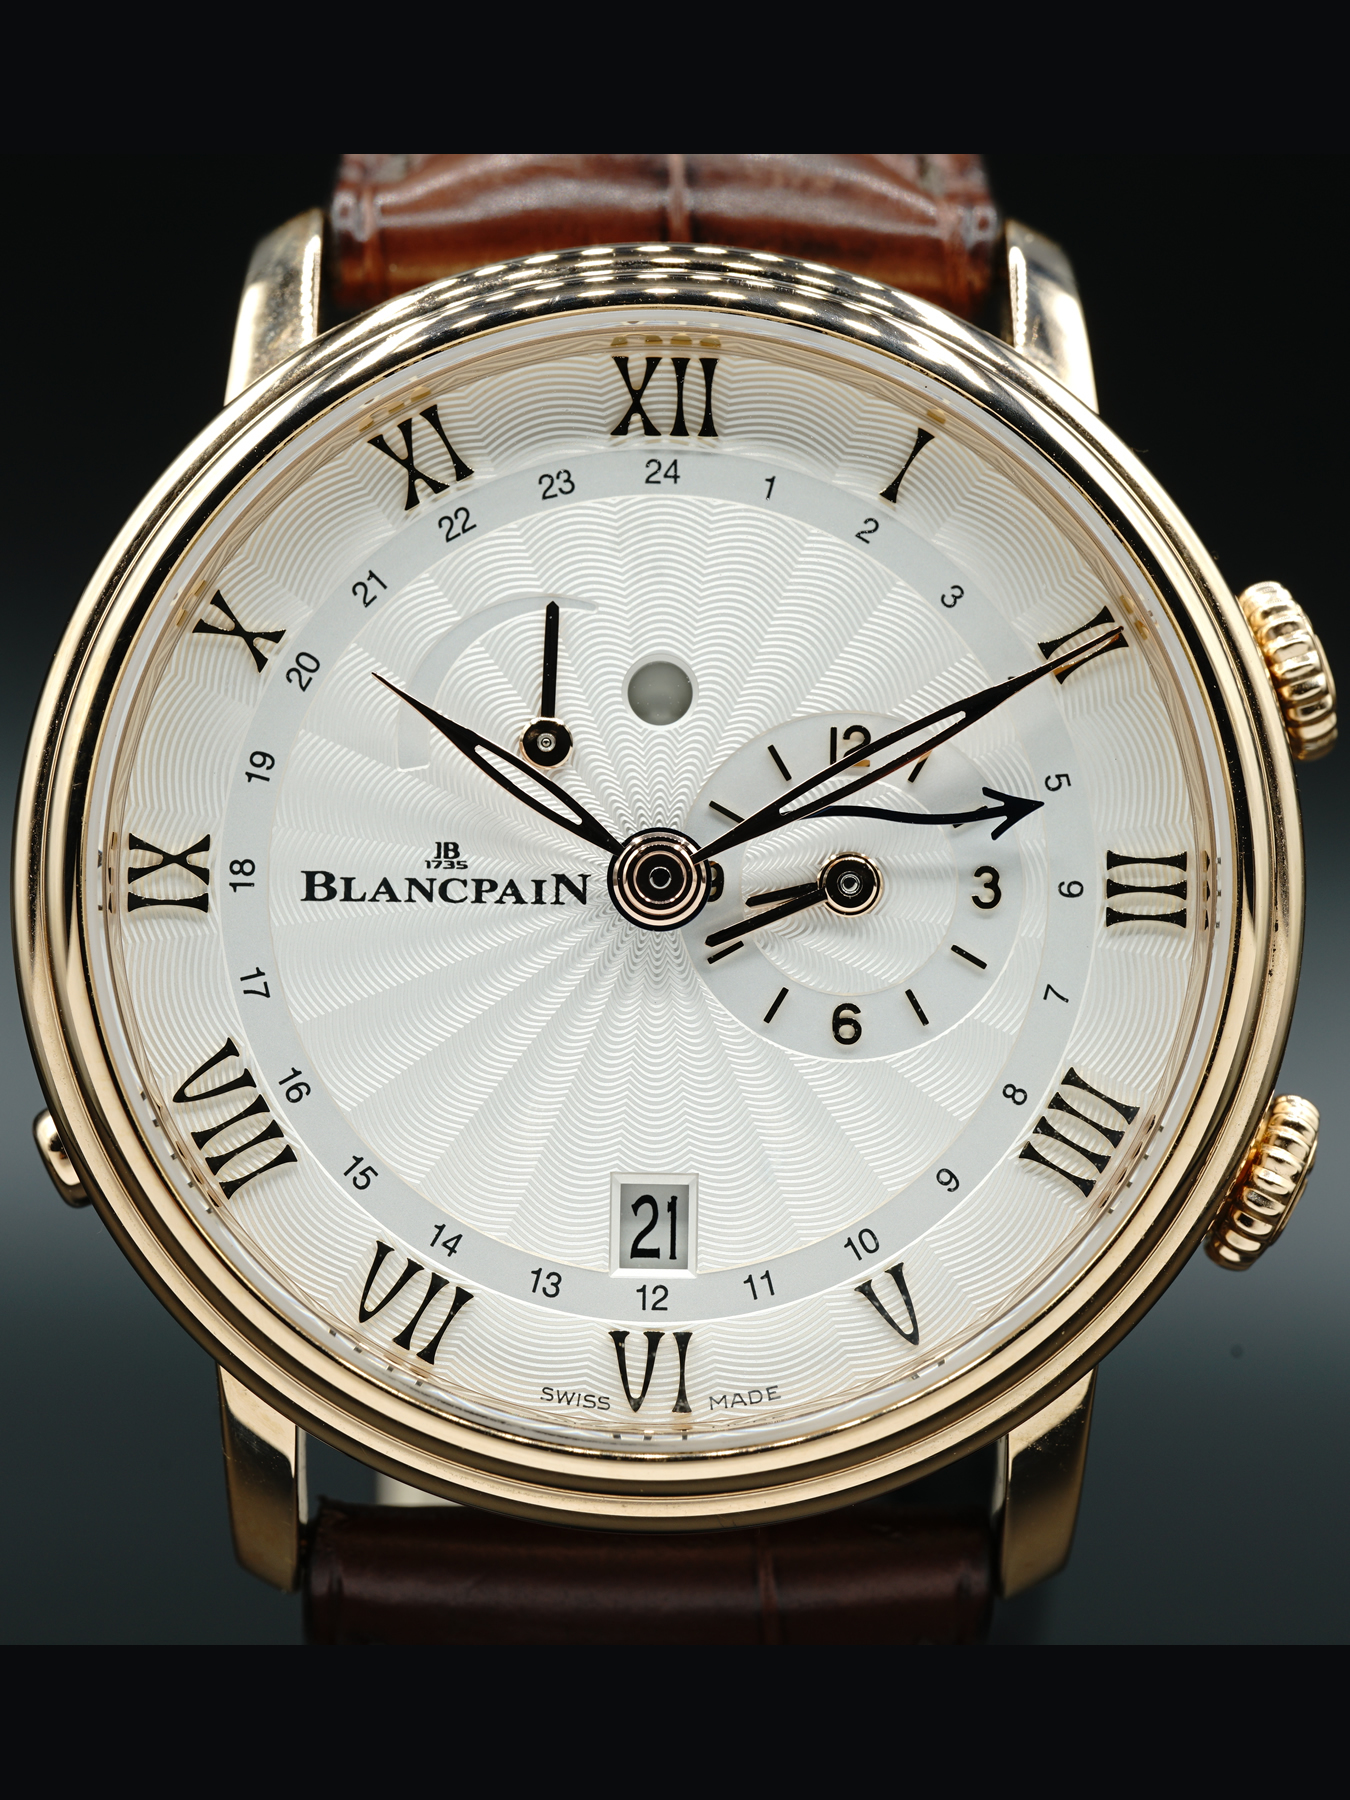 Blancpain Villeret Reveil GMT 6640 3642 55B - Exquisite Timepieces